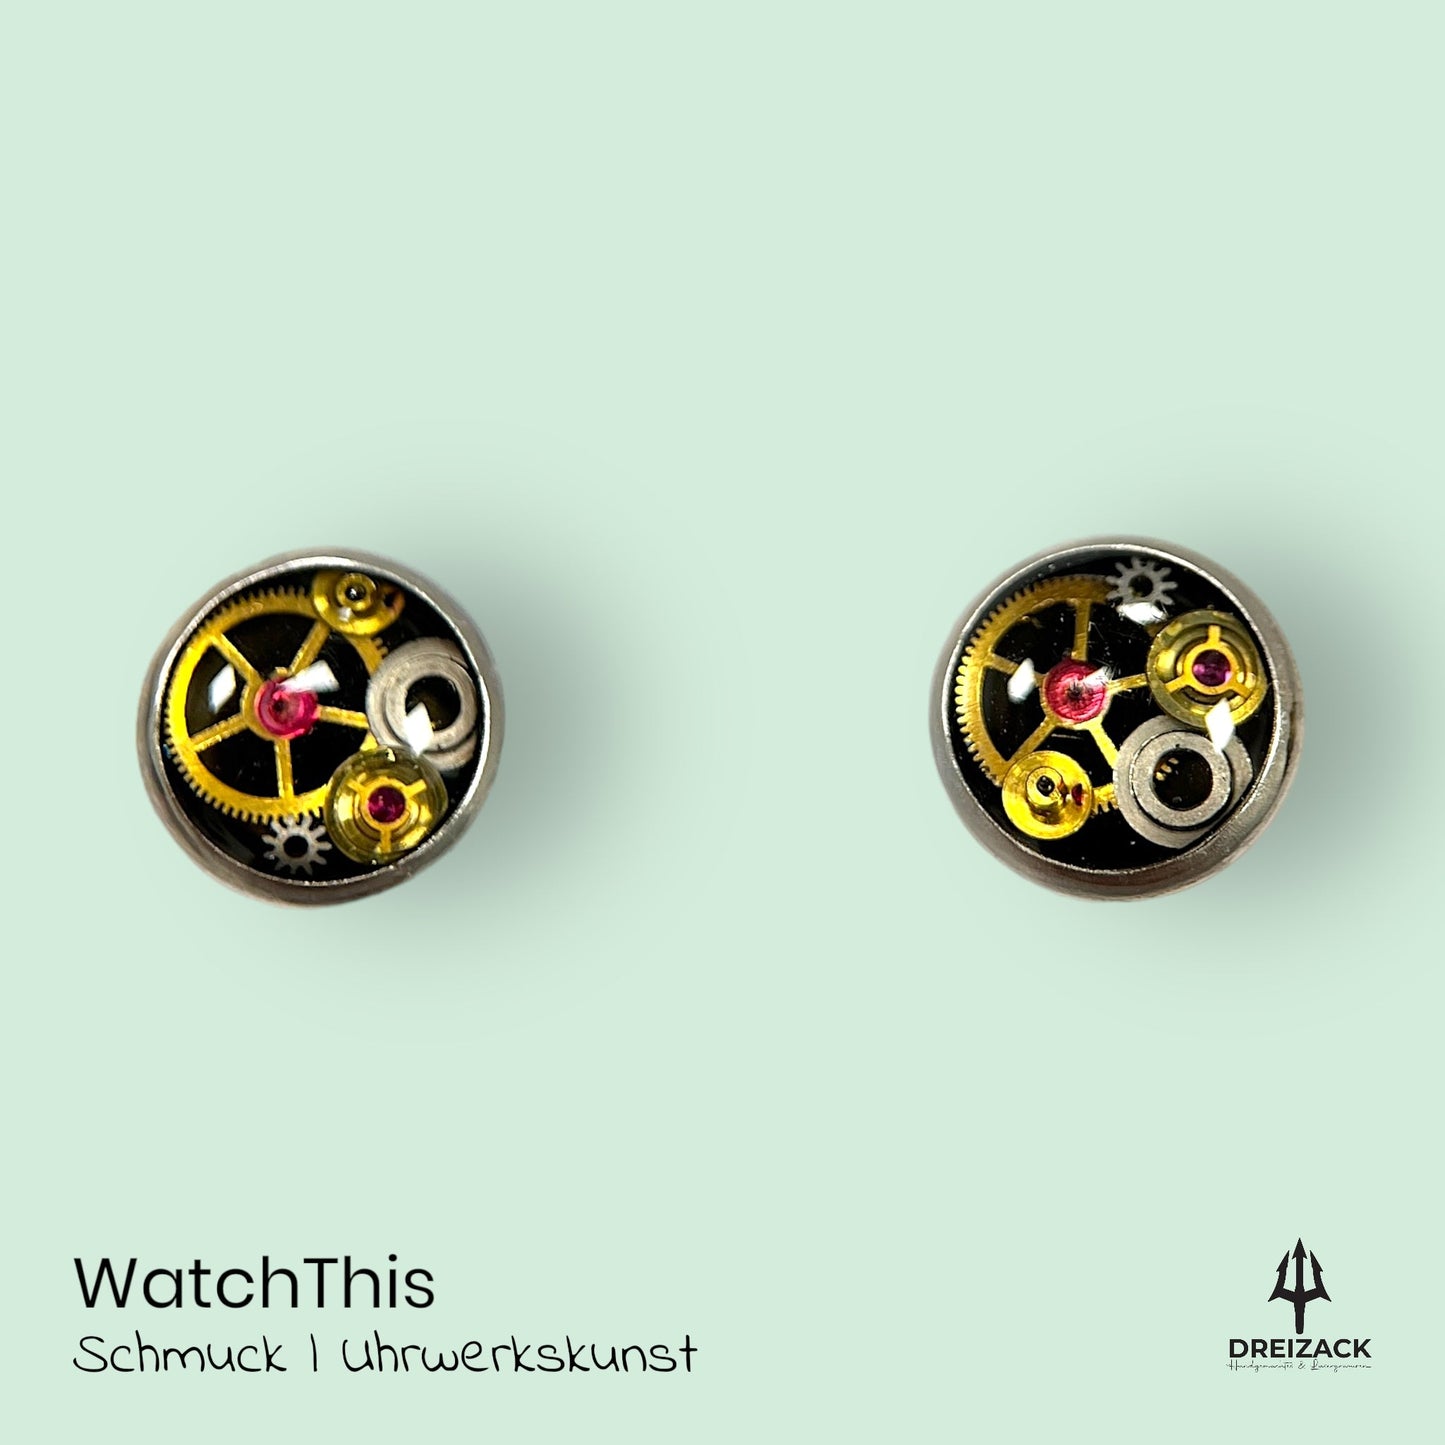 Ohrstecker von WatchThis - Zeitlose Eleganz aus Uhrwerken 6mm | Chronos Schmuck WatchThis oesterreich handgemachte geschenke in wien